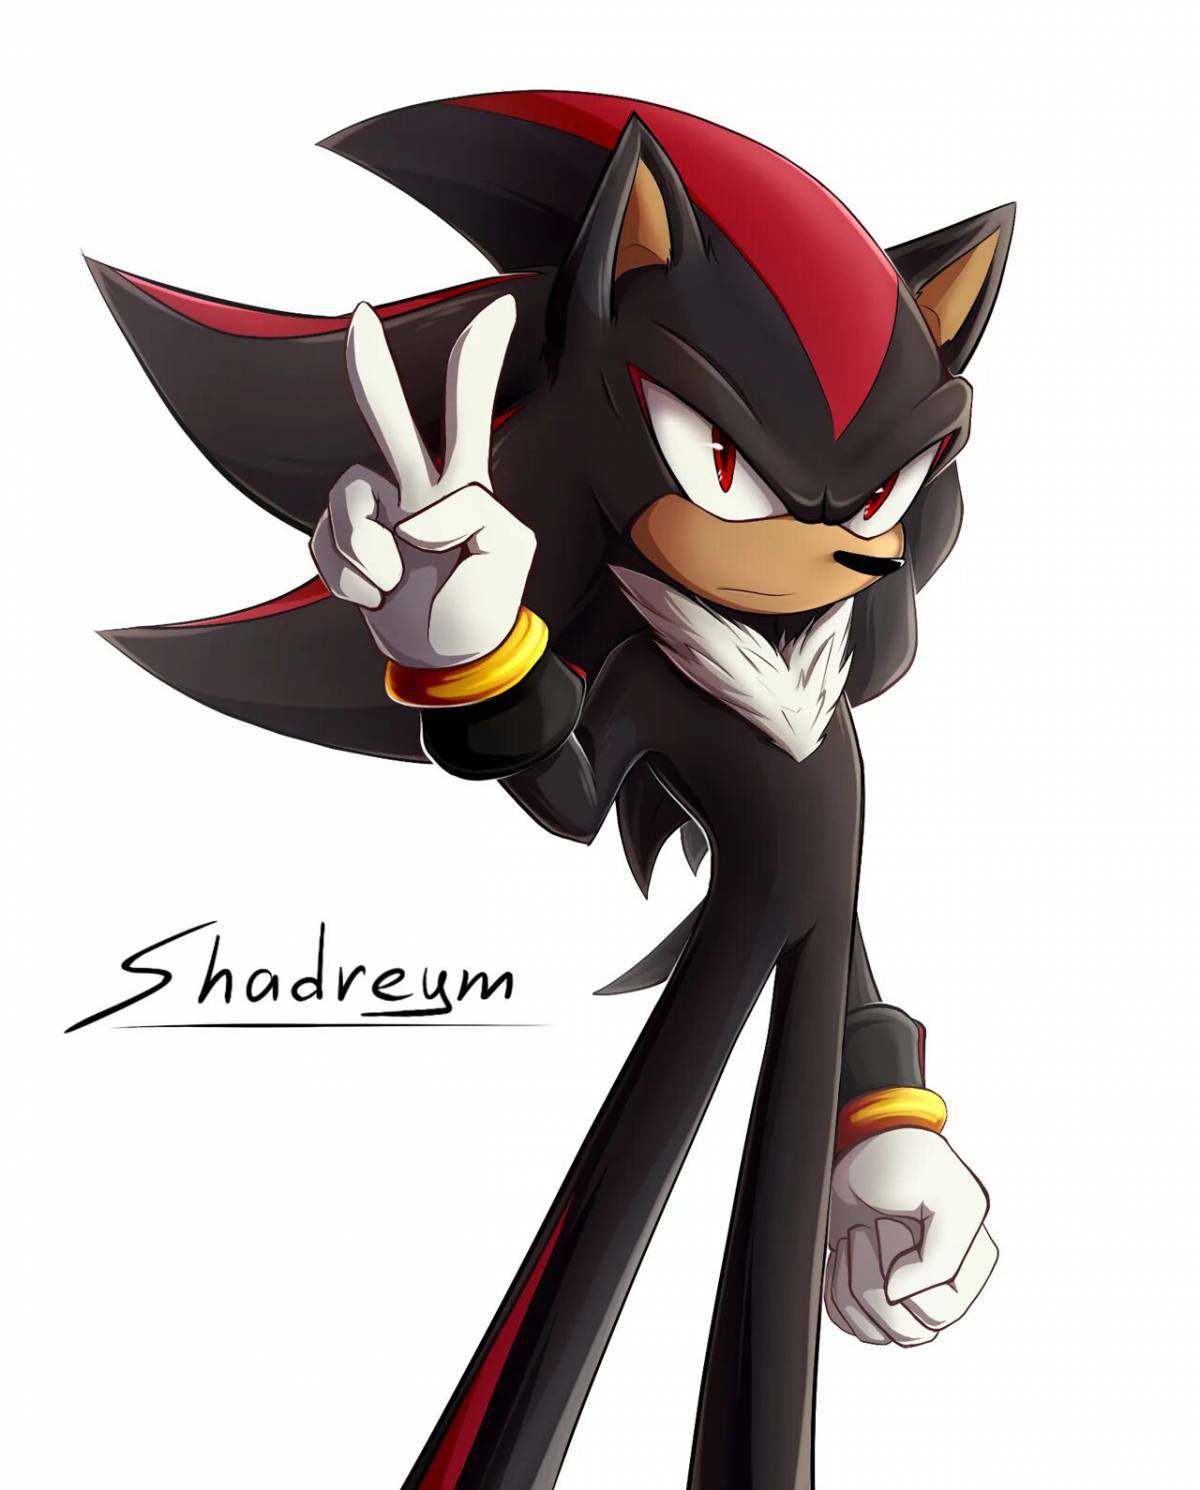 Shadow #1